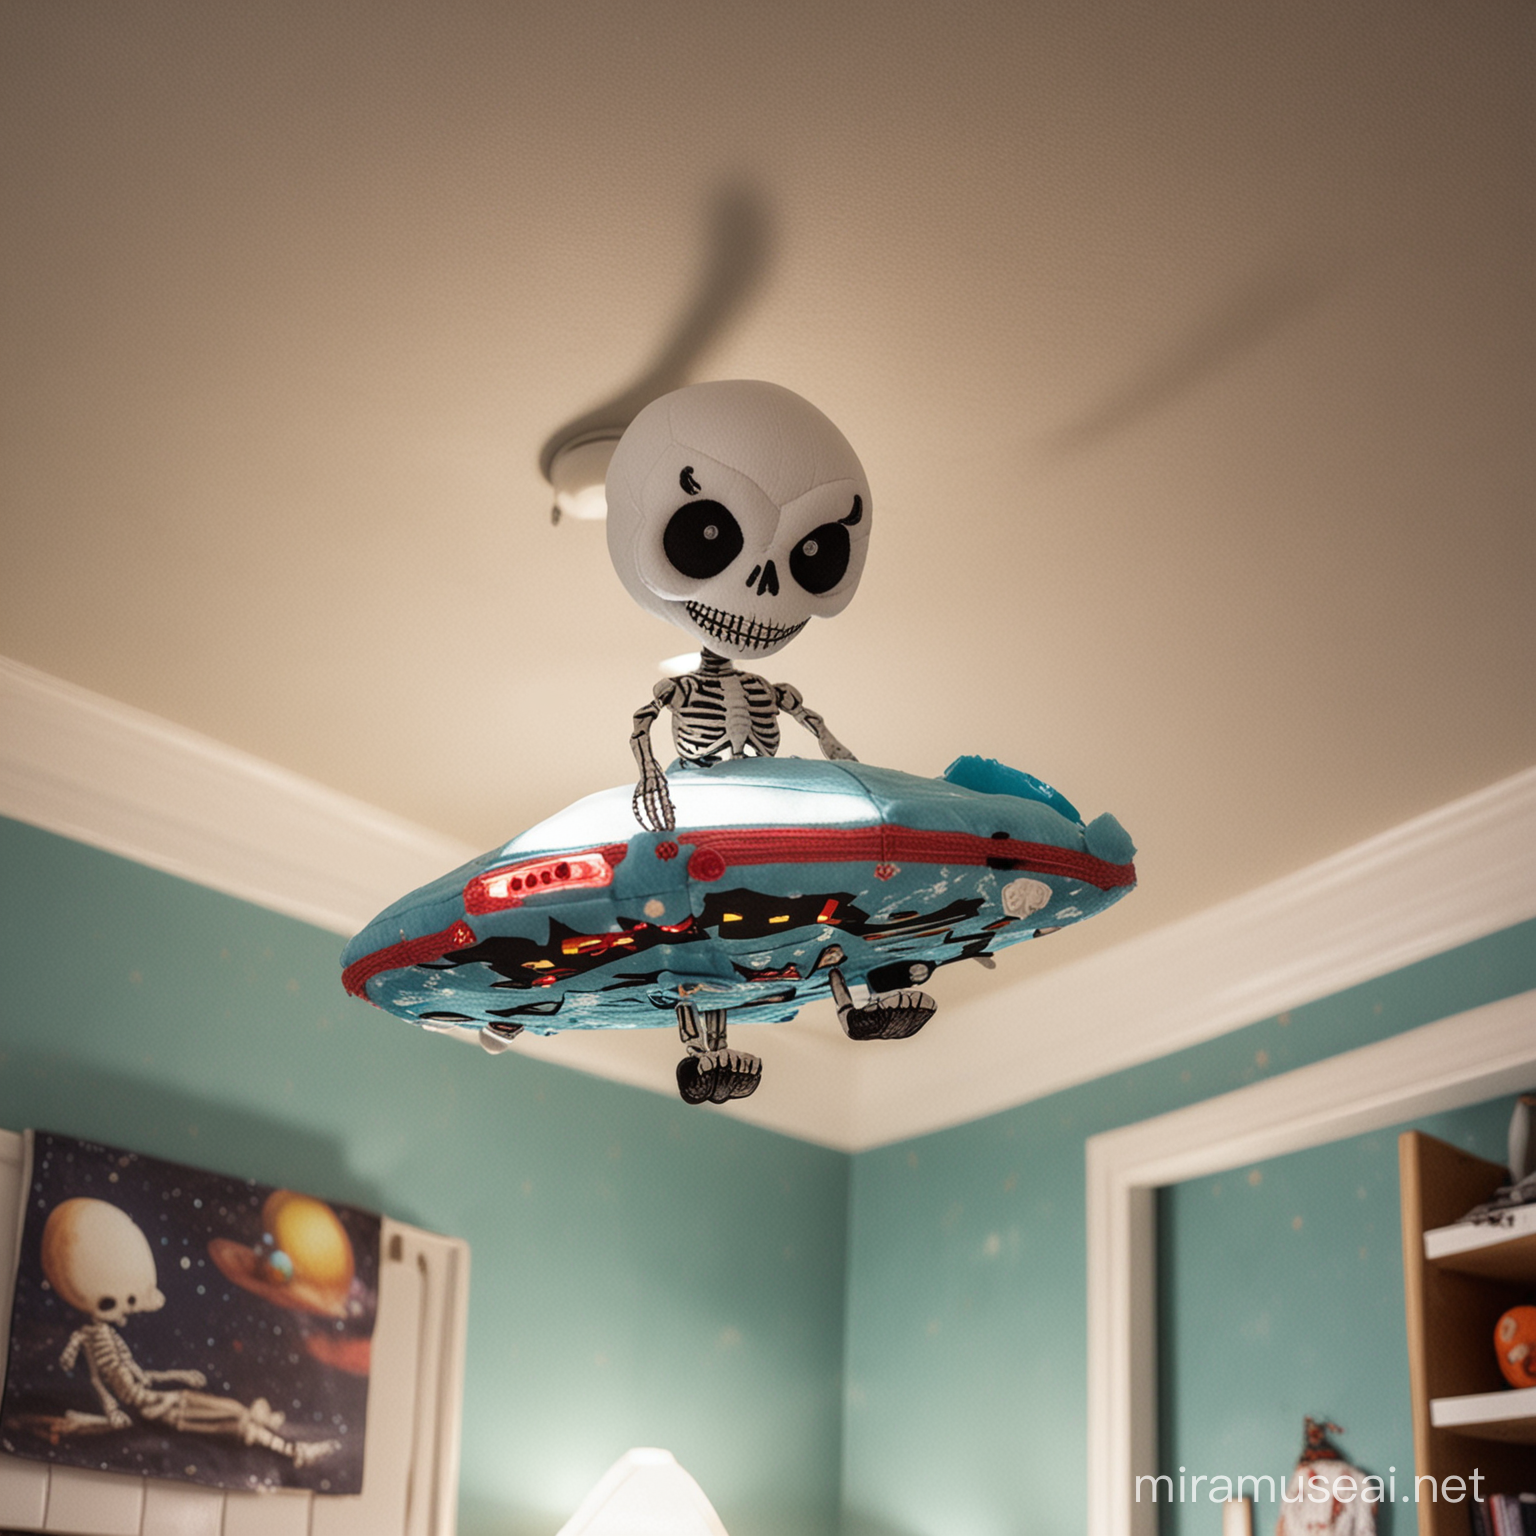 Skeleton UFO Plush Toy Flying in Boys Room